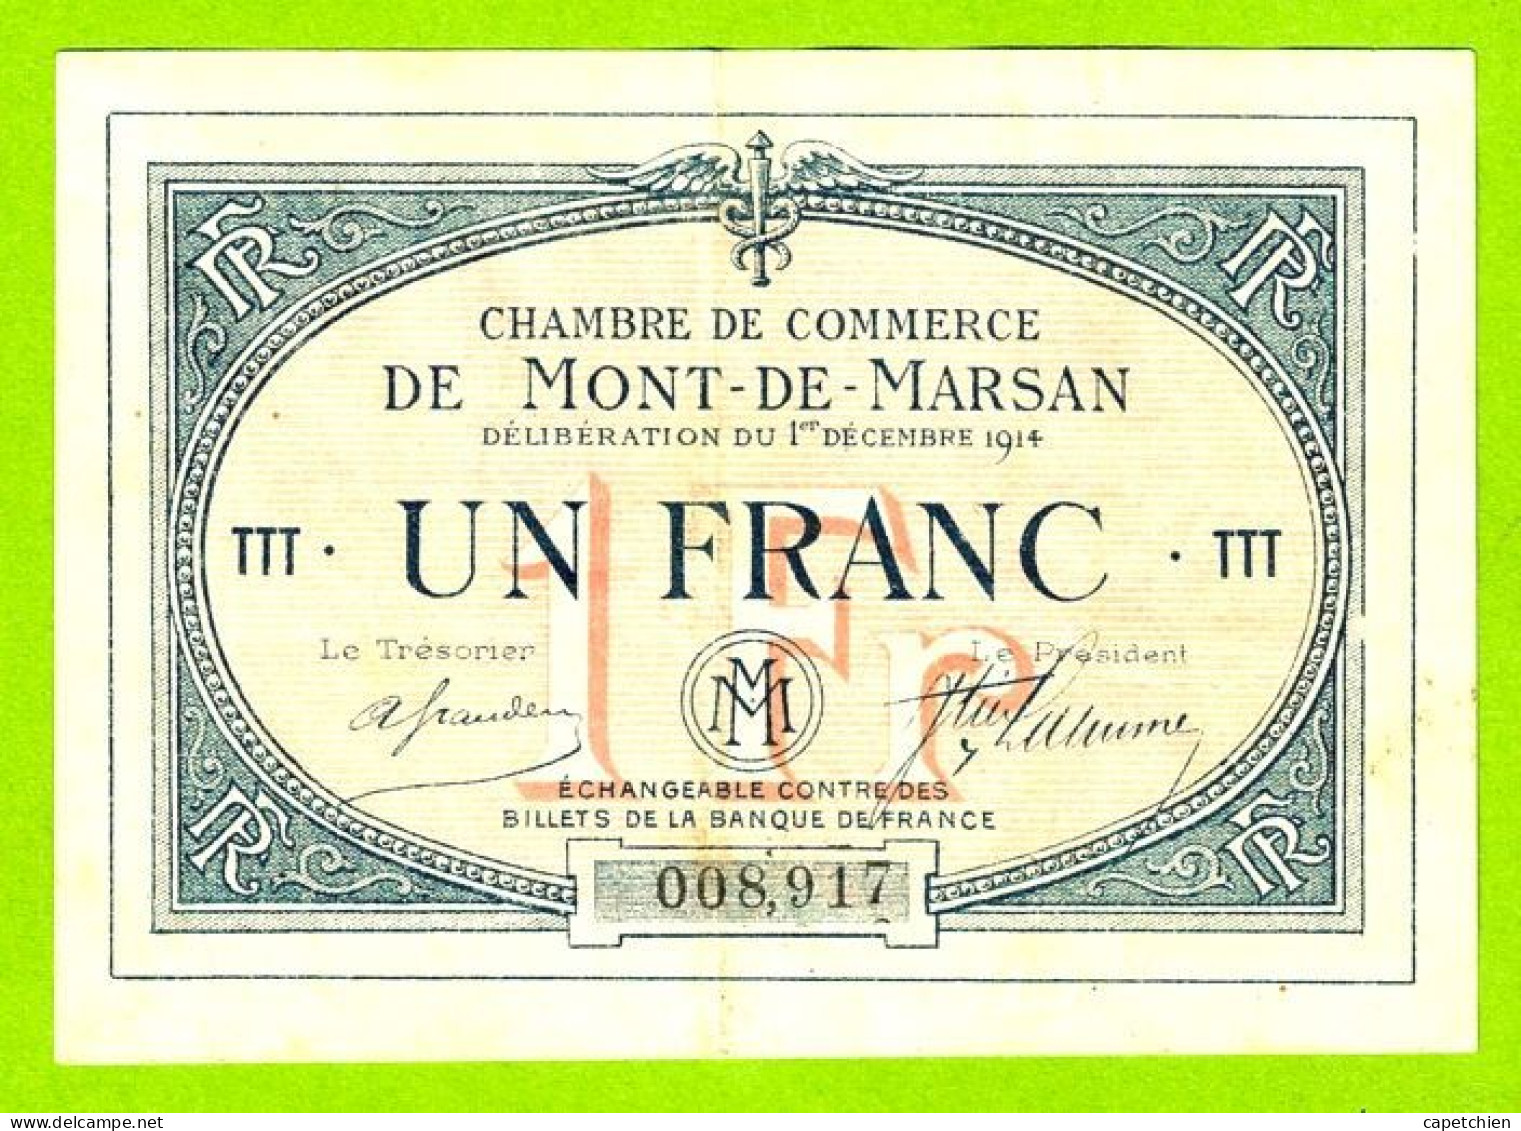 FRANCE / CHAMBRE De COMMERCE / MONT DE MARSAN / 1 FRANC / 1er DECEMBRE 1914 / 008917 / SERIE Ttt - Handelskammer